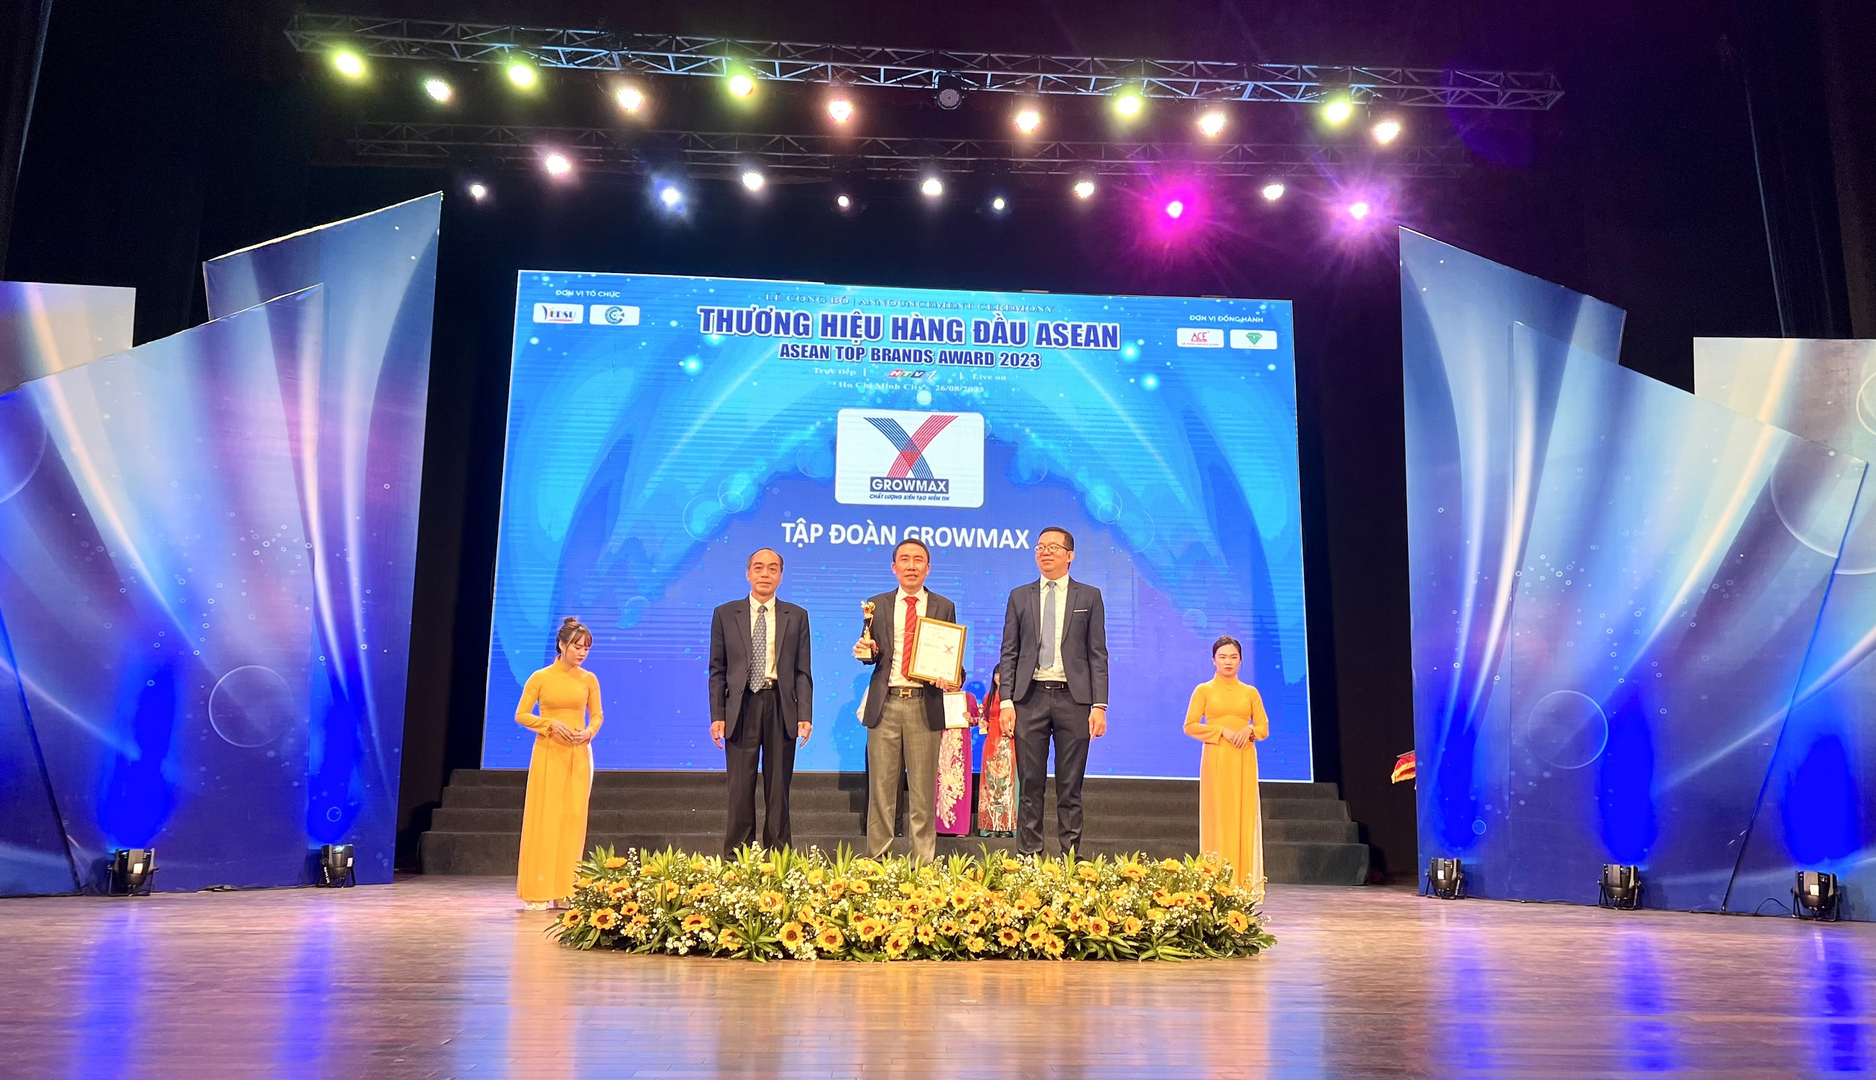 Ông Mai Văn Hoàng, Tổng Giám đốc Tập đoàn GrowMax nhận giải thưởng Top 10 'Thương hiệu hàng đầu ASEAN 2023'. Đây là năm thứ 2 liên tiếp GrowMax vinh dự nhận được giải thưởng này.